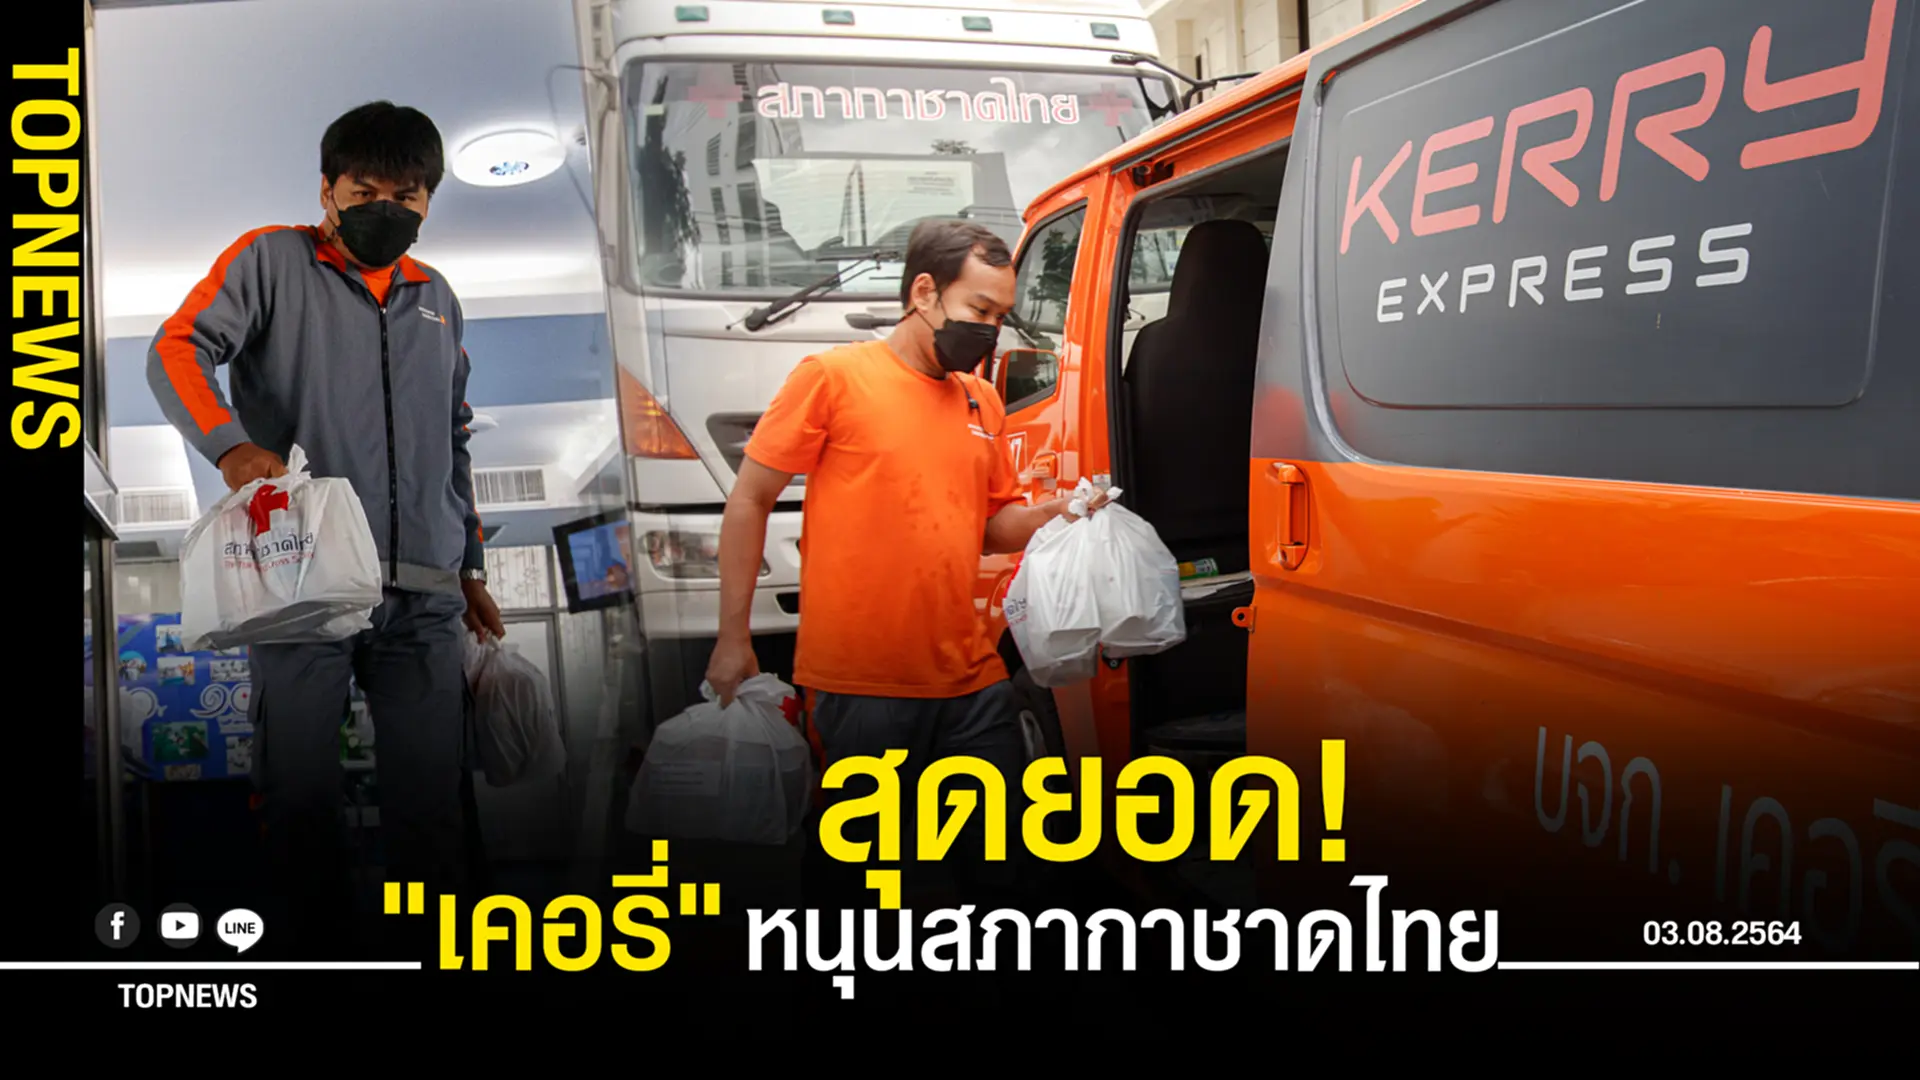 สุดยอด! “เคอรี่” หนุนสภากาชาดไทย จัดทีมส่งด่วน “กล่องพ้นภัย” ช่วยผู้ป่วยโควิด-19